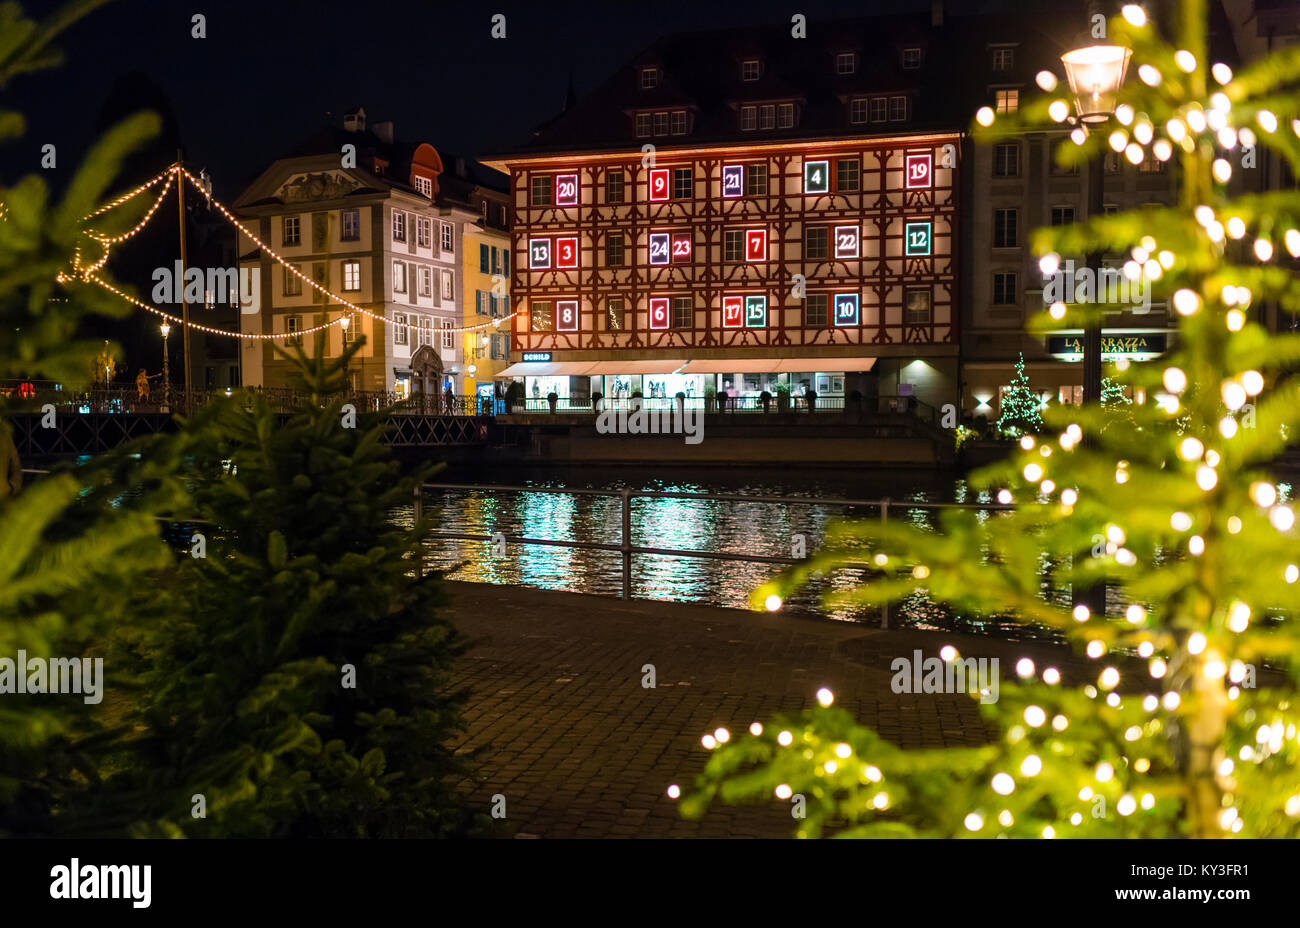 Luzern, Schweiz - 2. Dezember 2017: die Fassade eines Hauses in Luzern  zeigt eine beleuchtete Adventskalender wie Weihnachten Ornament  Stockfotografie - Alamy